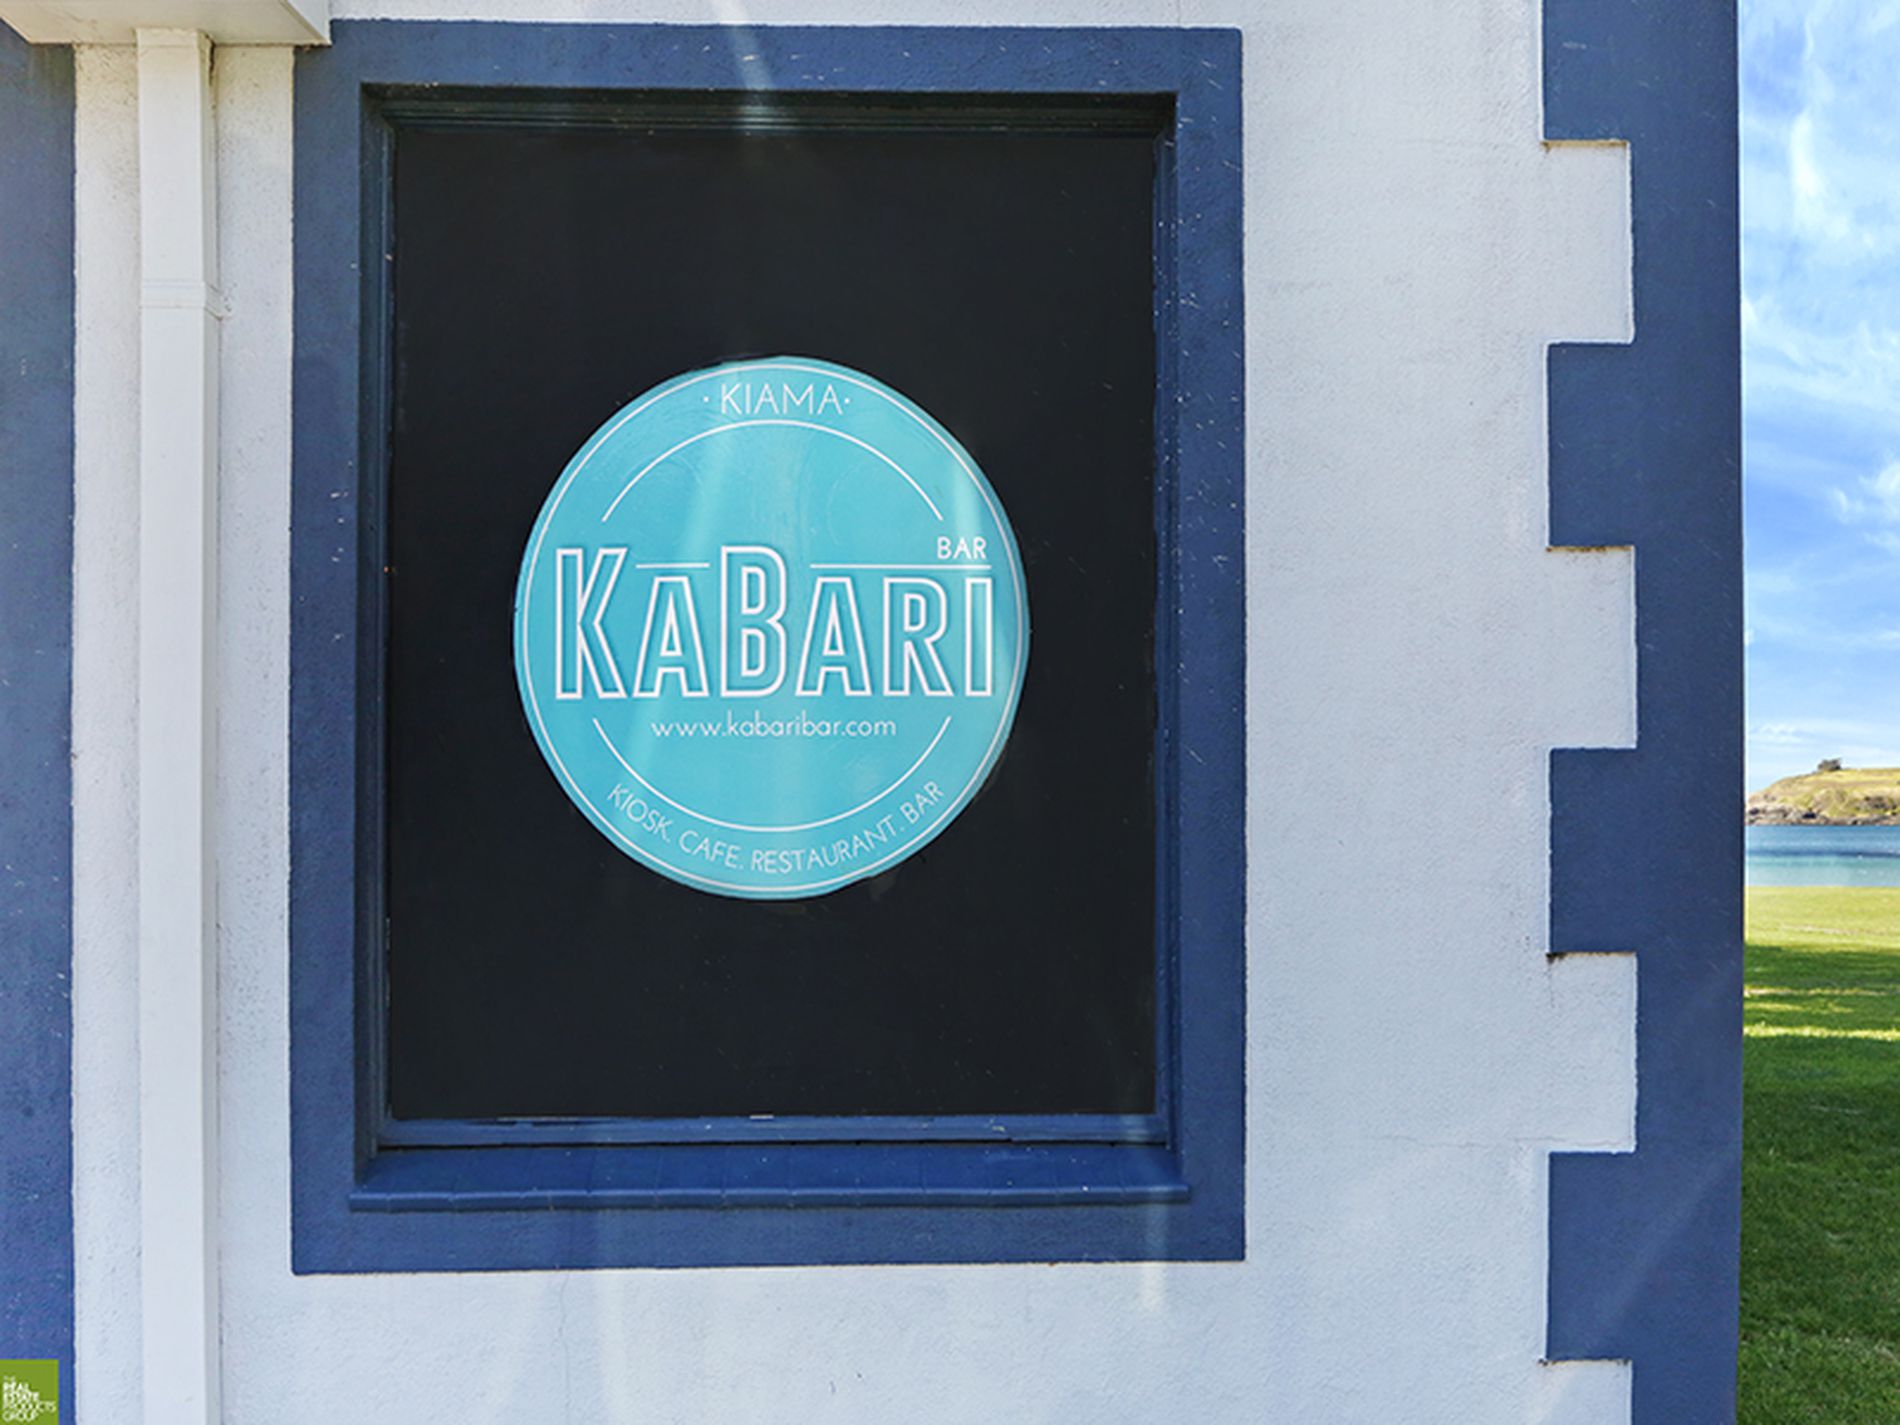 Kabari Bar